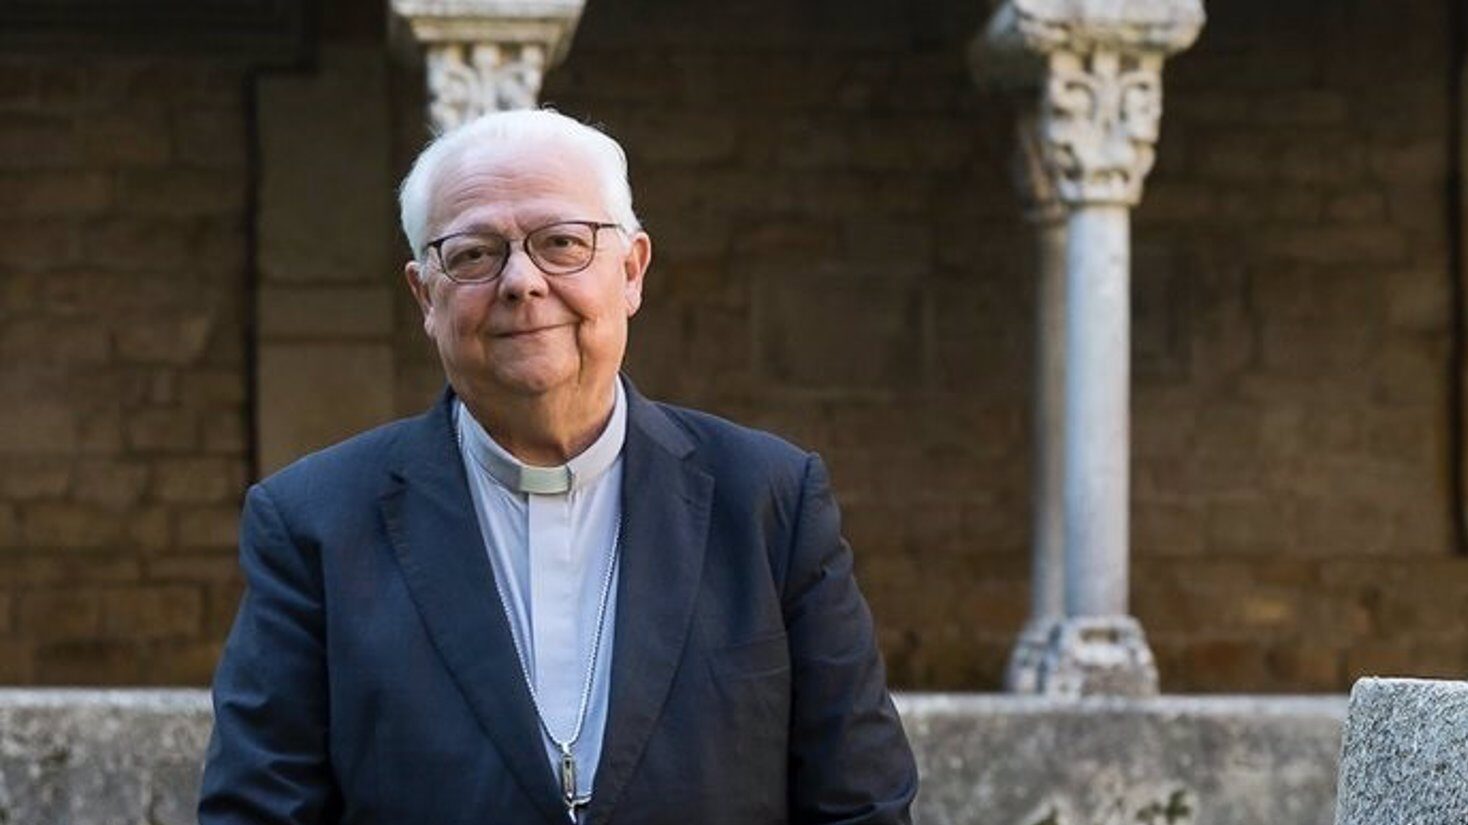 Muere el obispo de Gerona Francesc Pardo a los 75 años